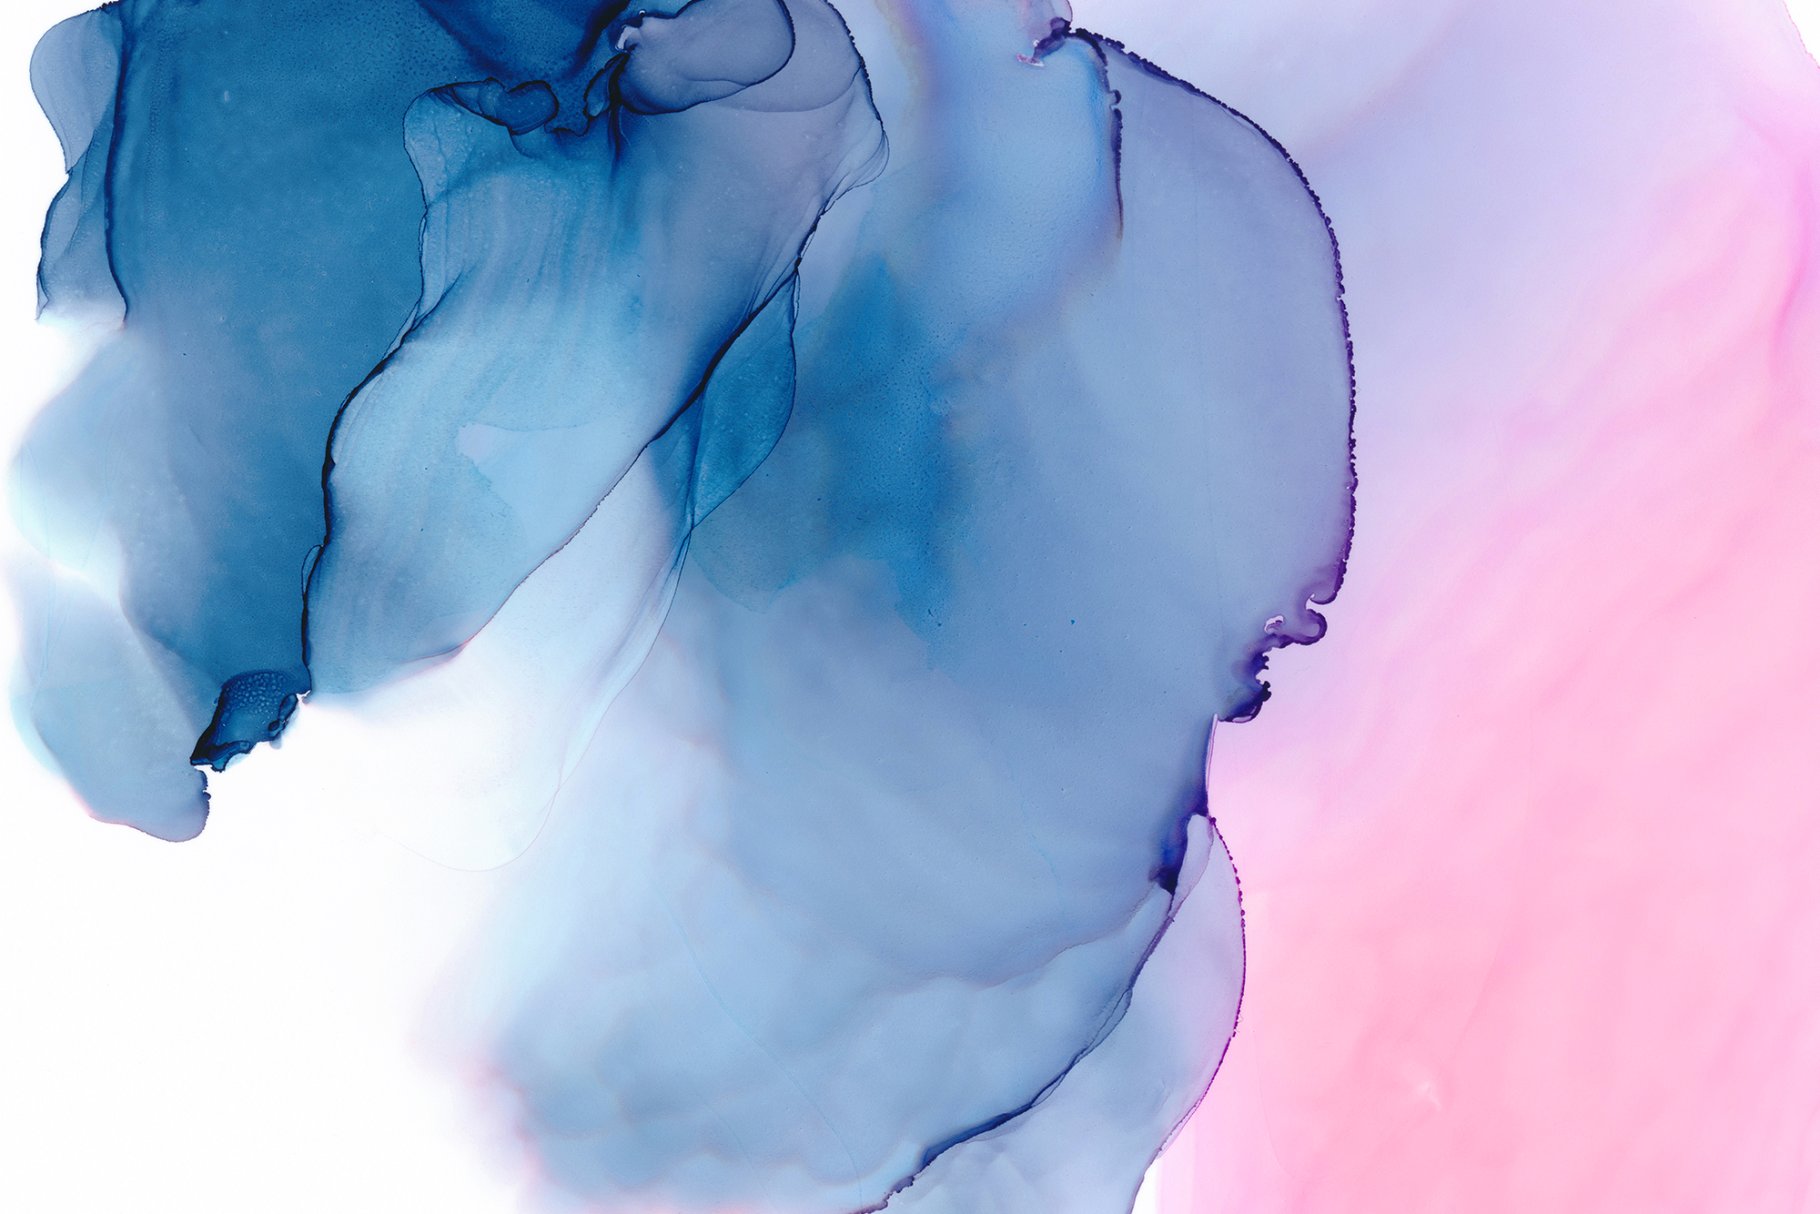 如漂浮的云朵墨水纹理合集 Ethereal Ink Texture Collection插图(7)